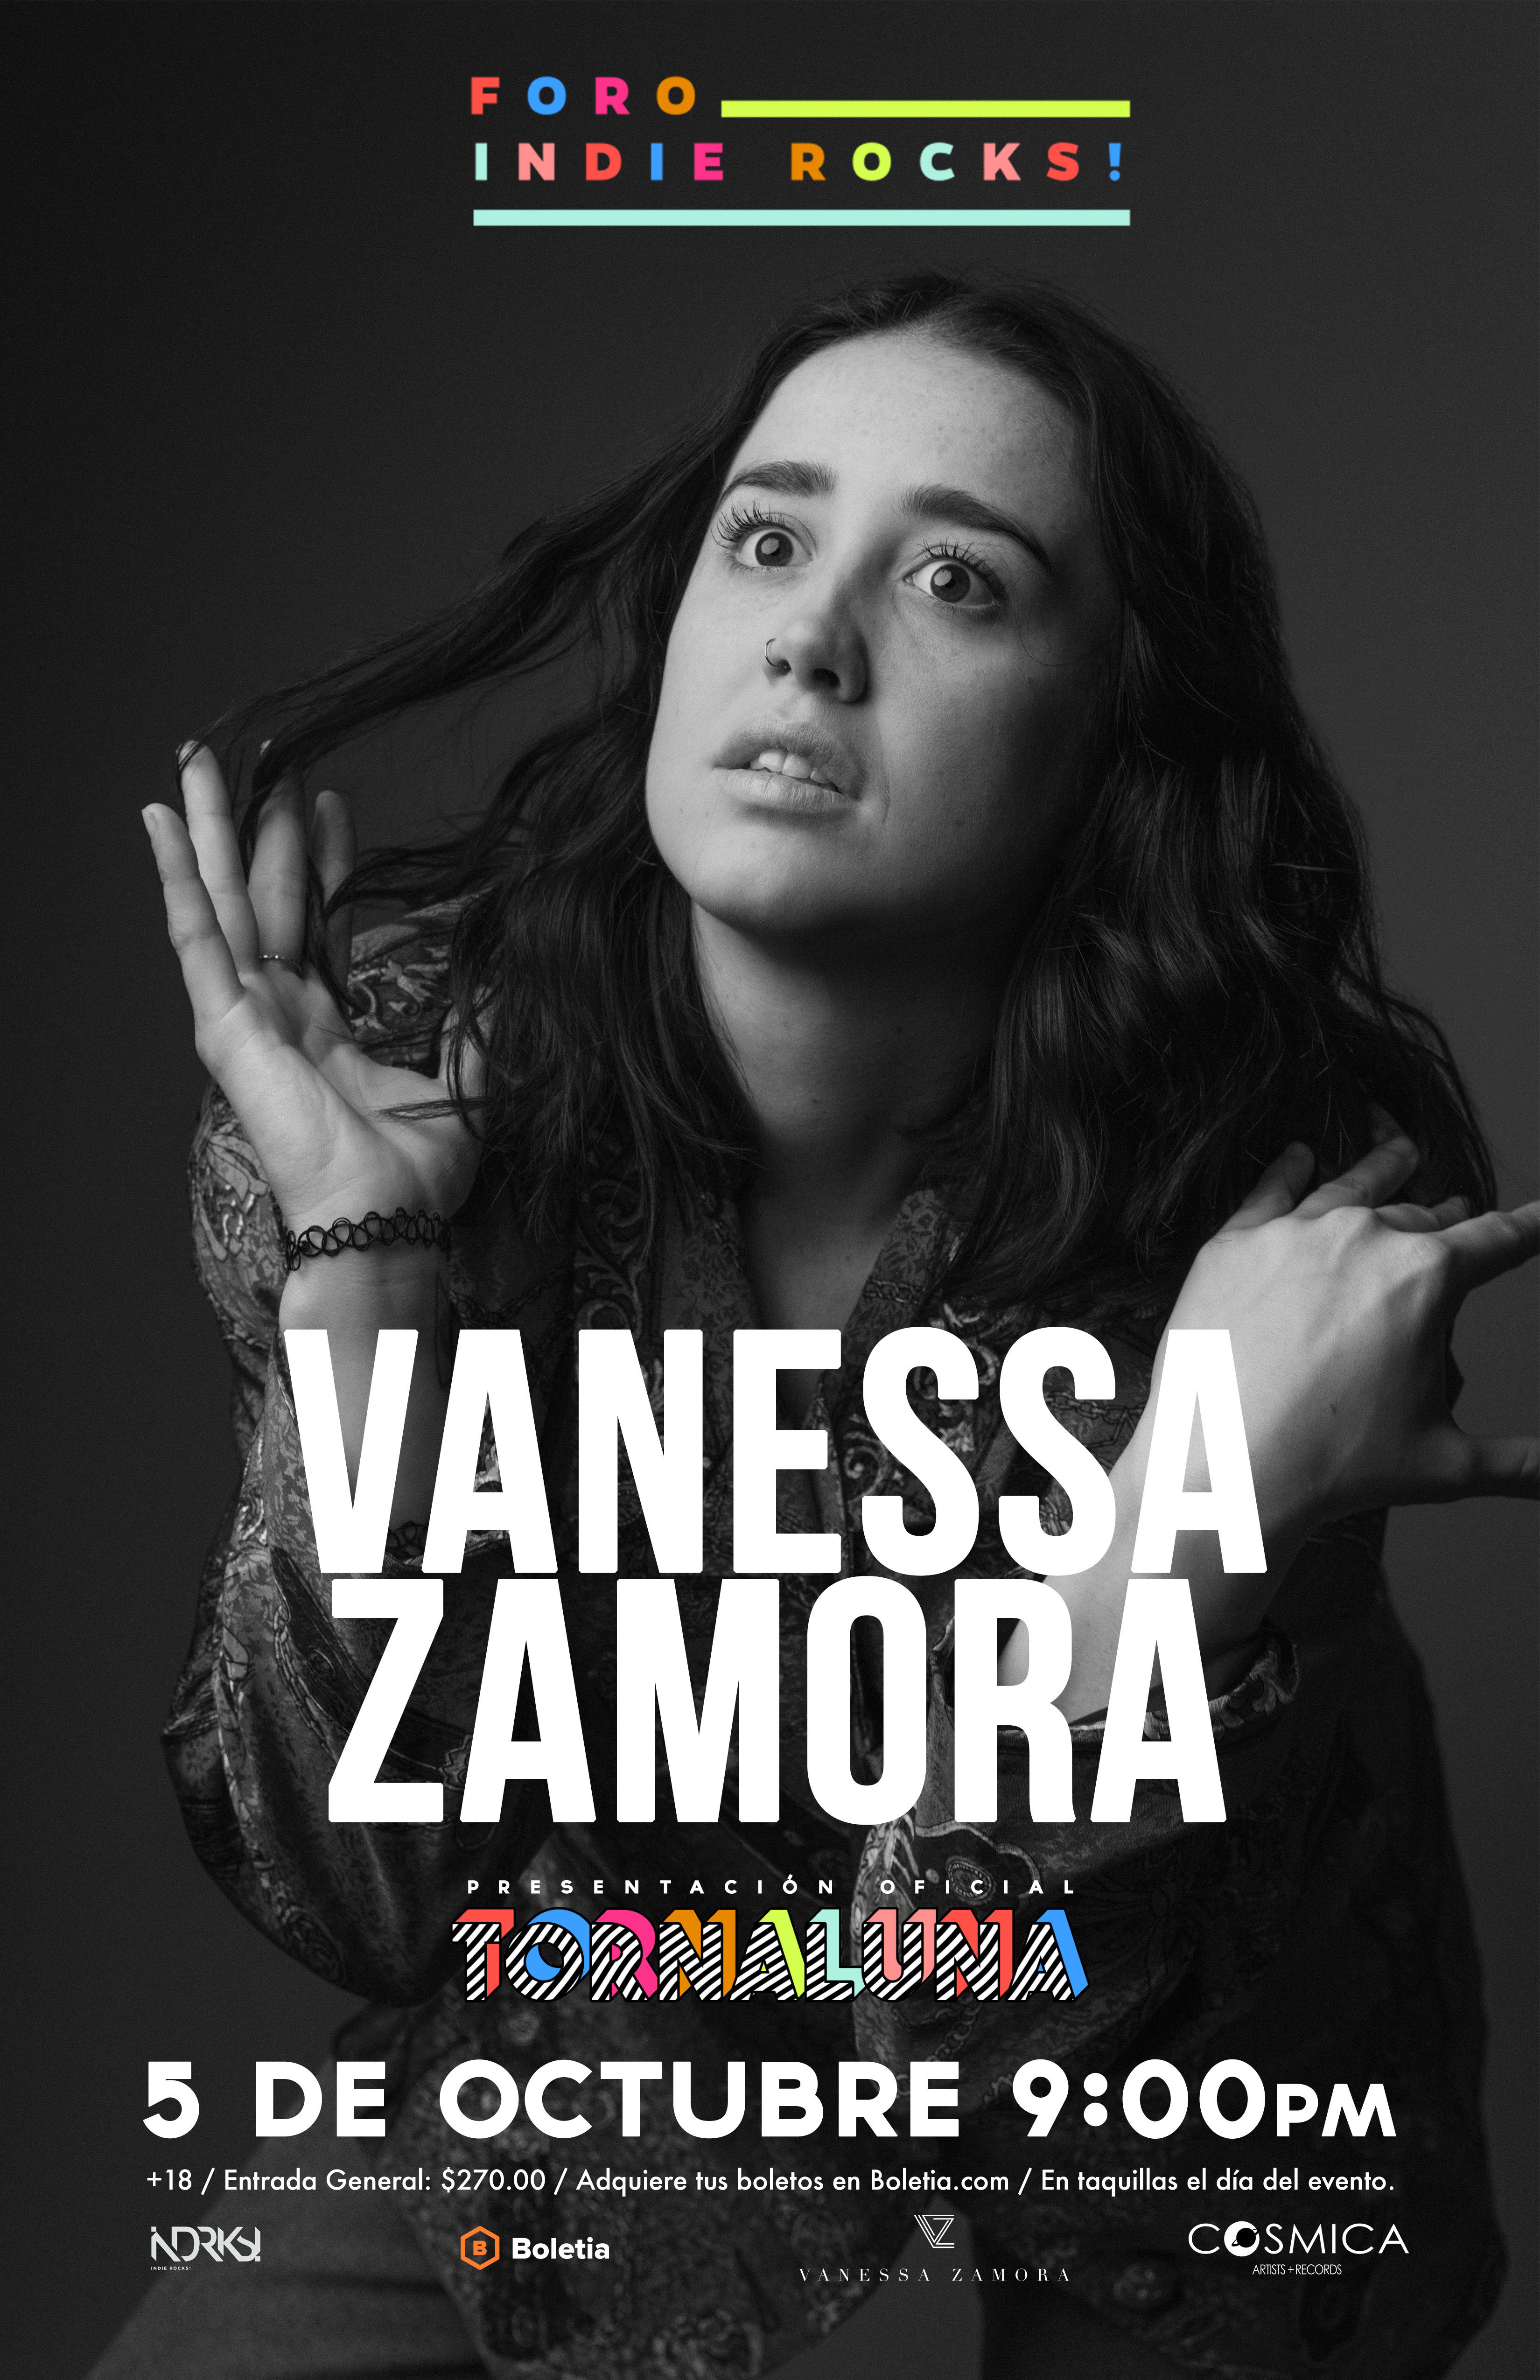 Platicamos con Vanessa Zamora sobre su nuevo sencillo “Malas amistades”